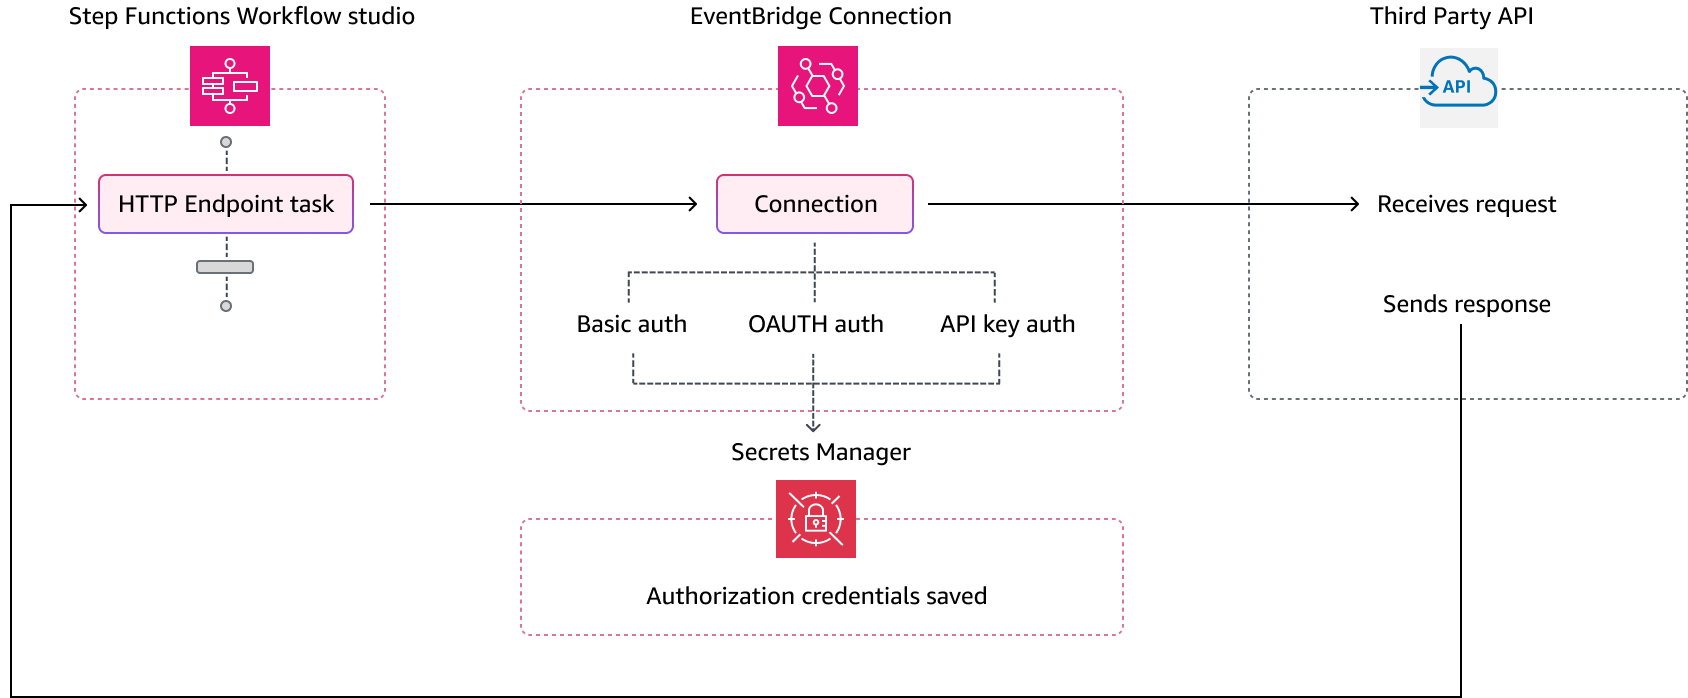 Il processo Step Functions utilizza una EventBridge connessione che gestisce le credenziali di autenticazione di un provider di API di terze parti. EventBridgecrea un account segreto Secrets Manager per memorizzare i parametri di connessione e autorizzazione in forma crittografata.